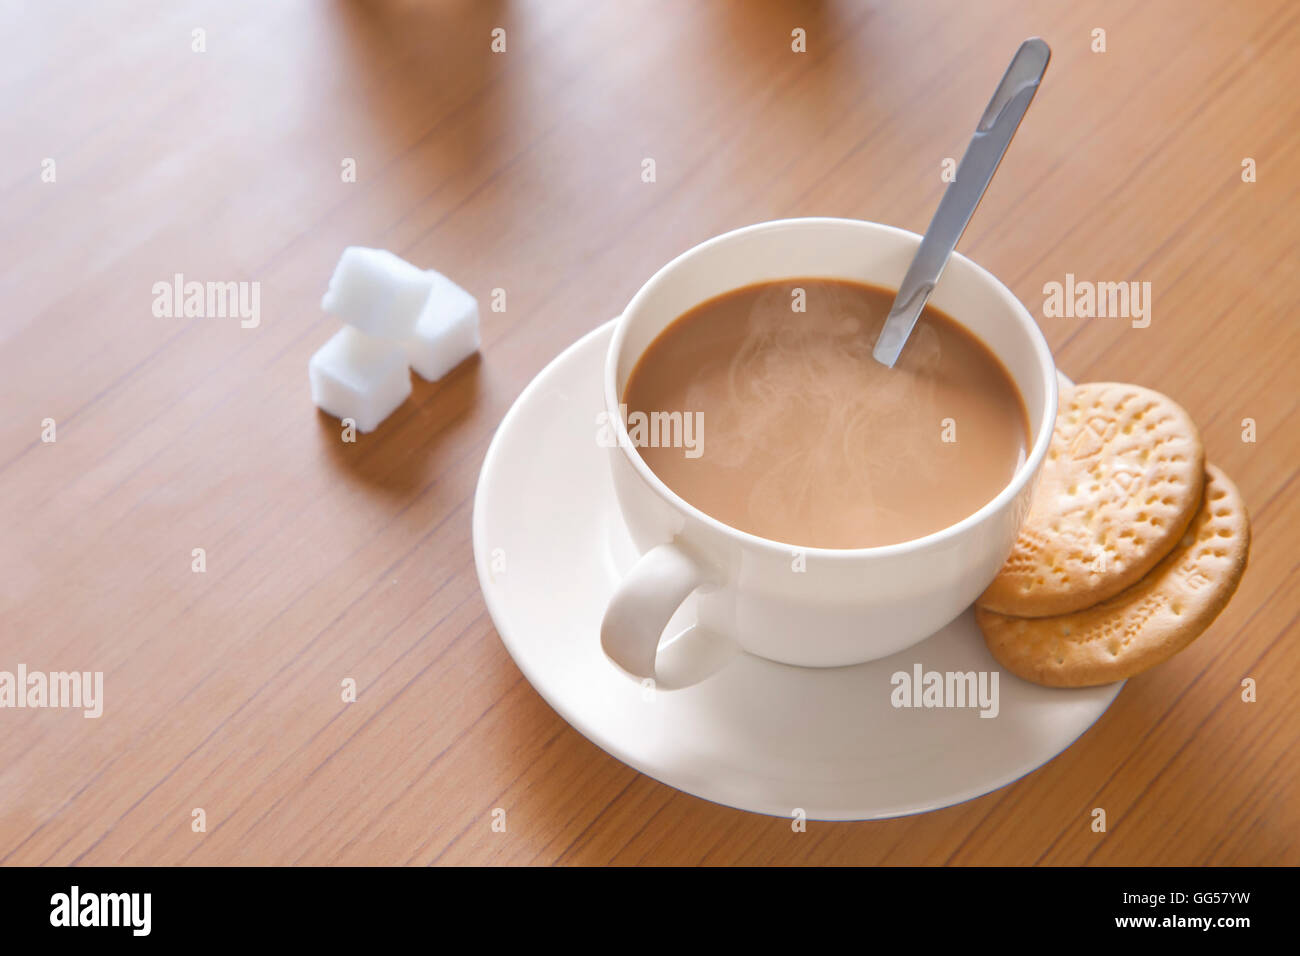 Close-up di tè caldo, cubetti di zucchero e biscotti sul tavolo Foto Stock